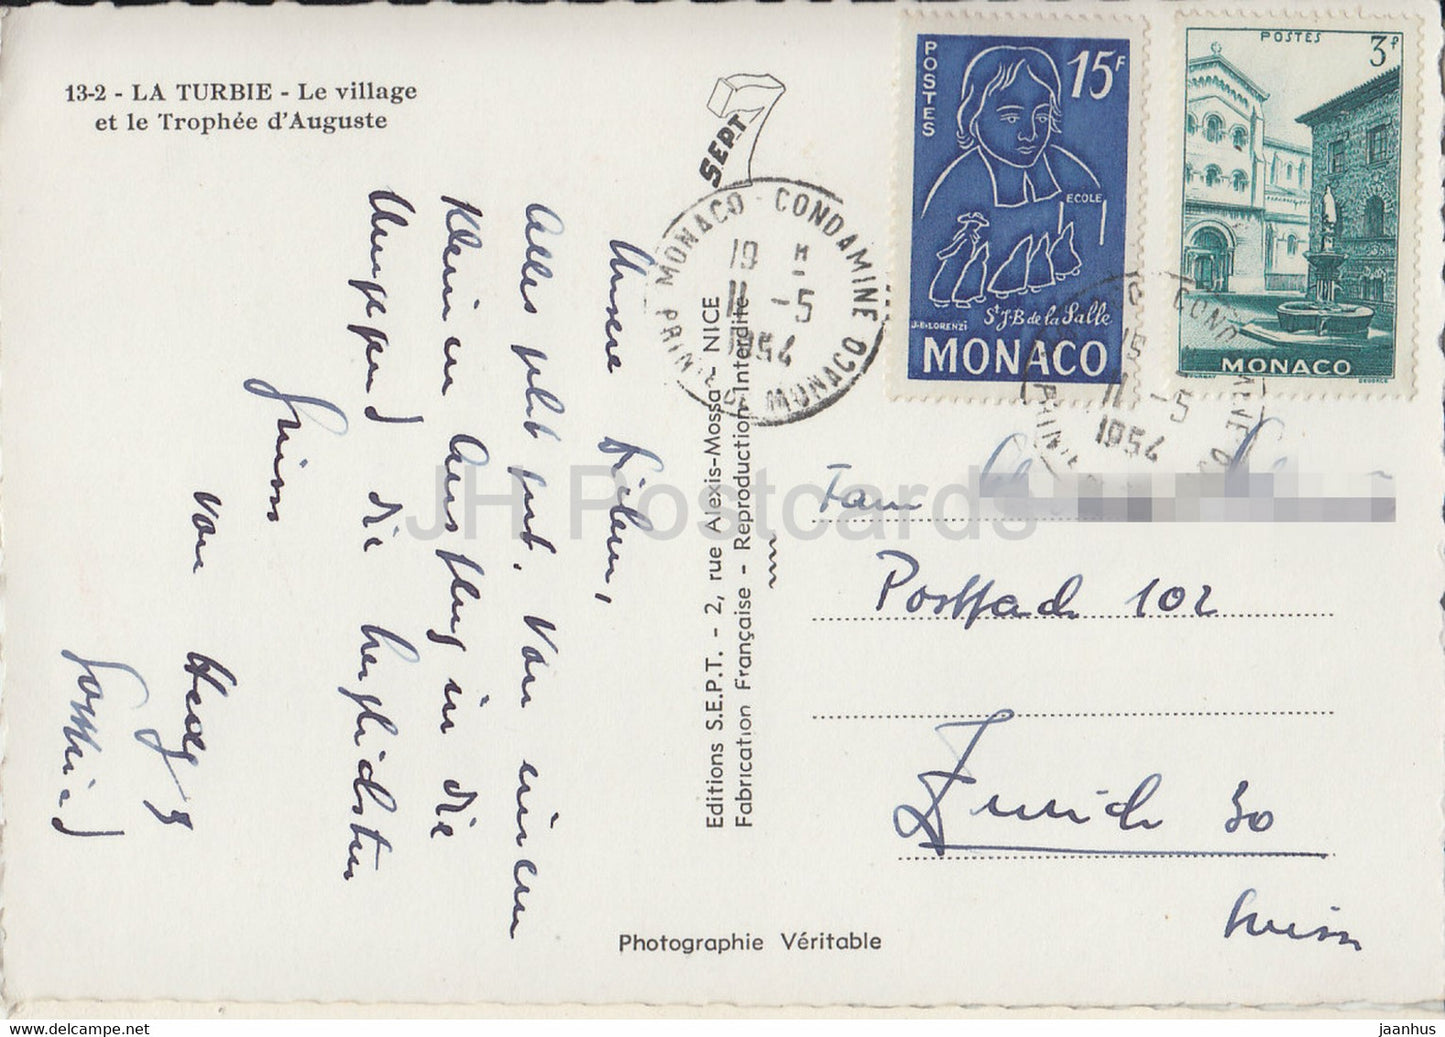 La Turbie - Le village et le Trophée d'Auguste - carte postale ancienne - 1964 - France - occasion